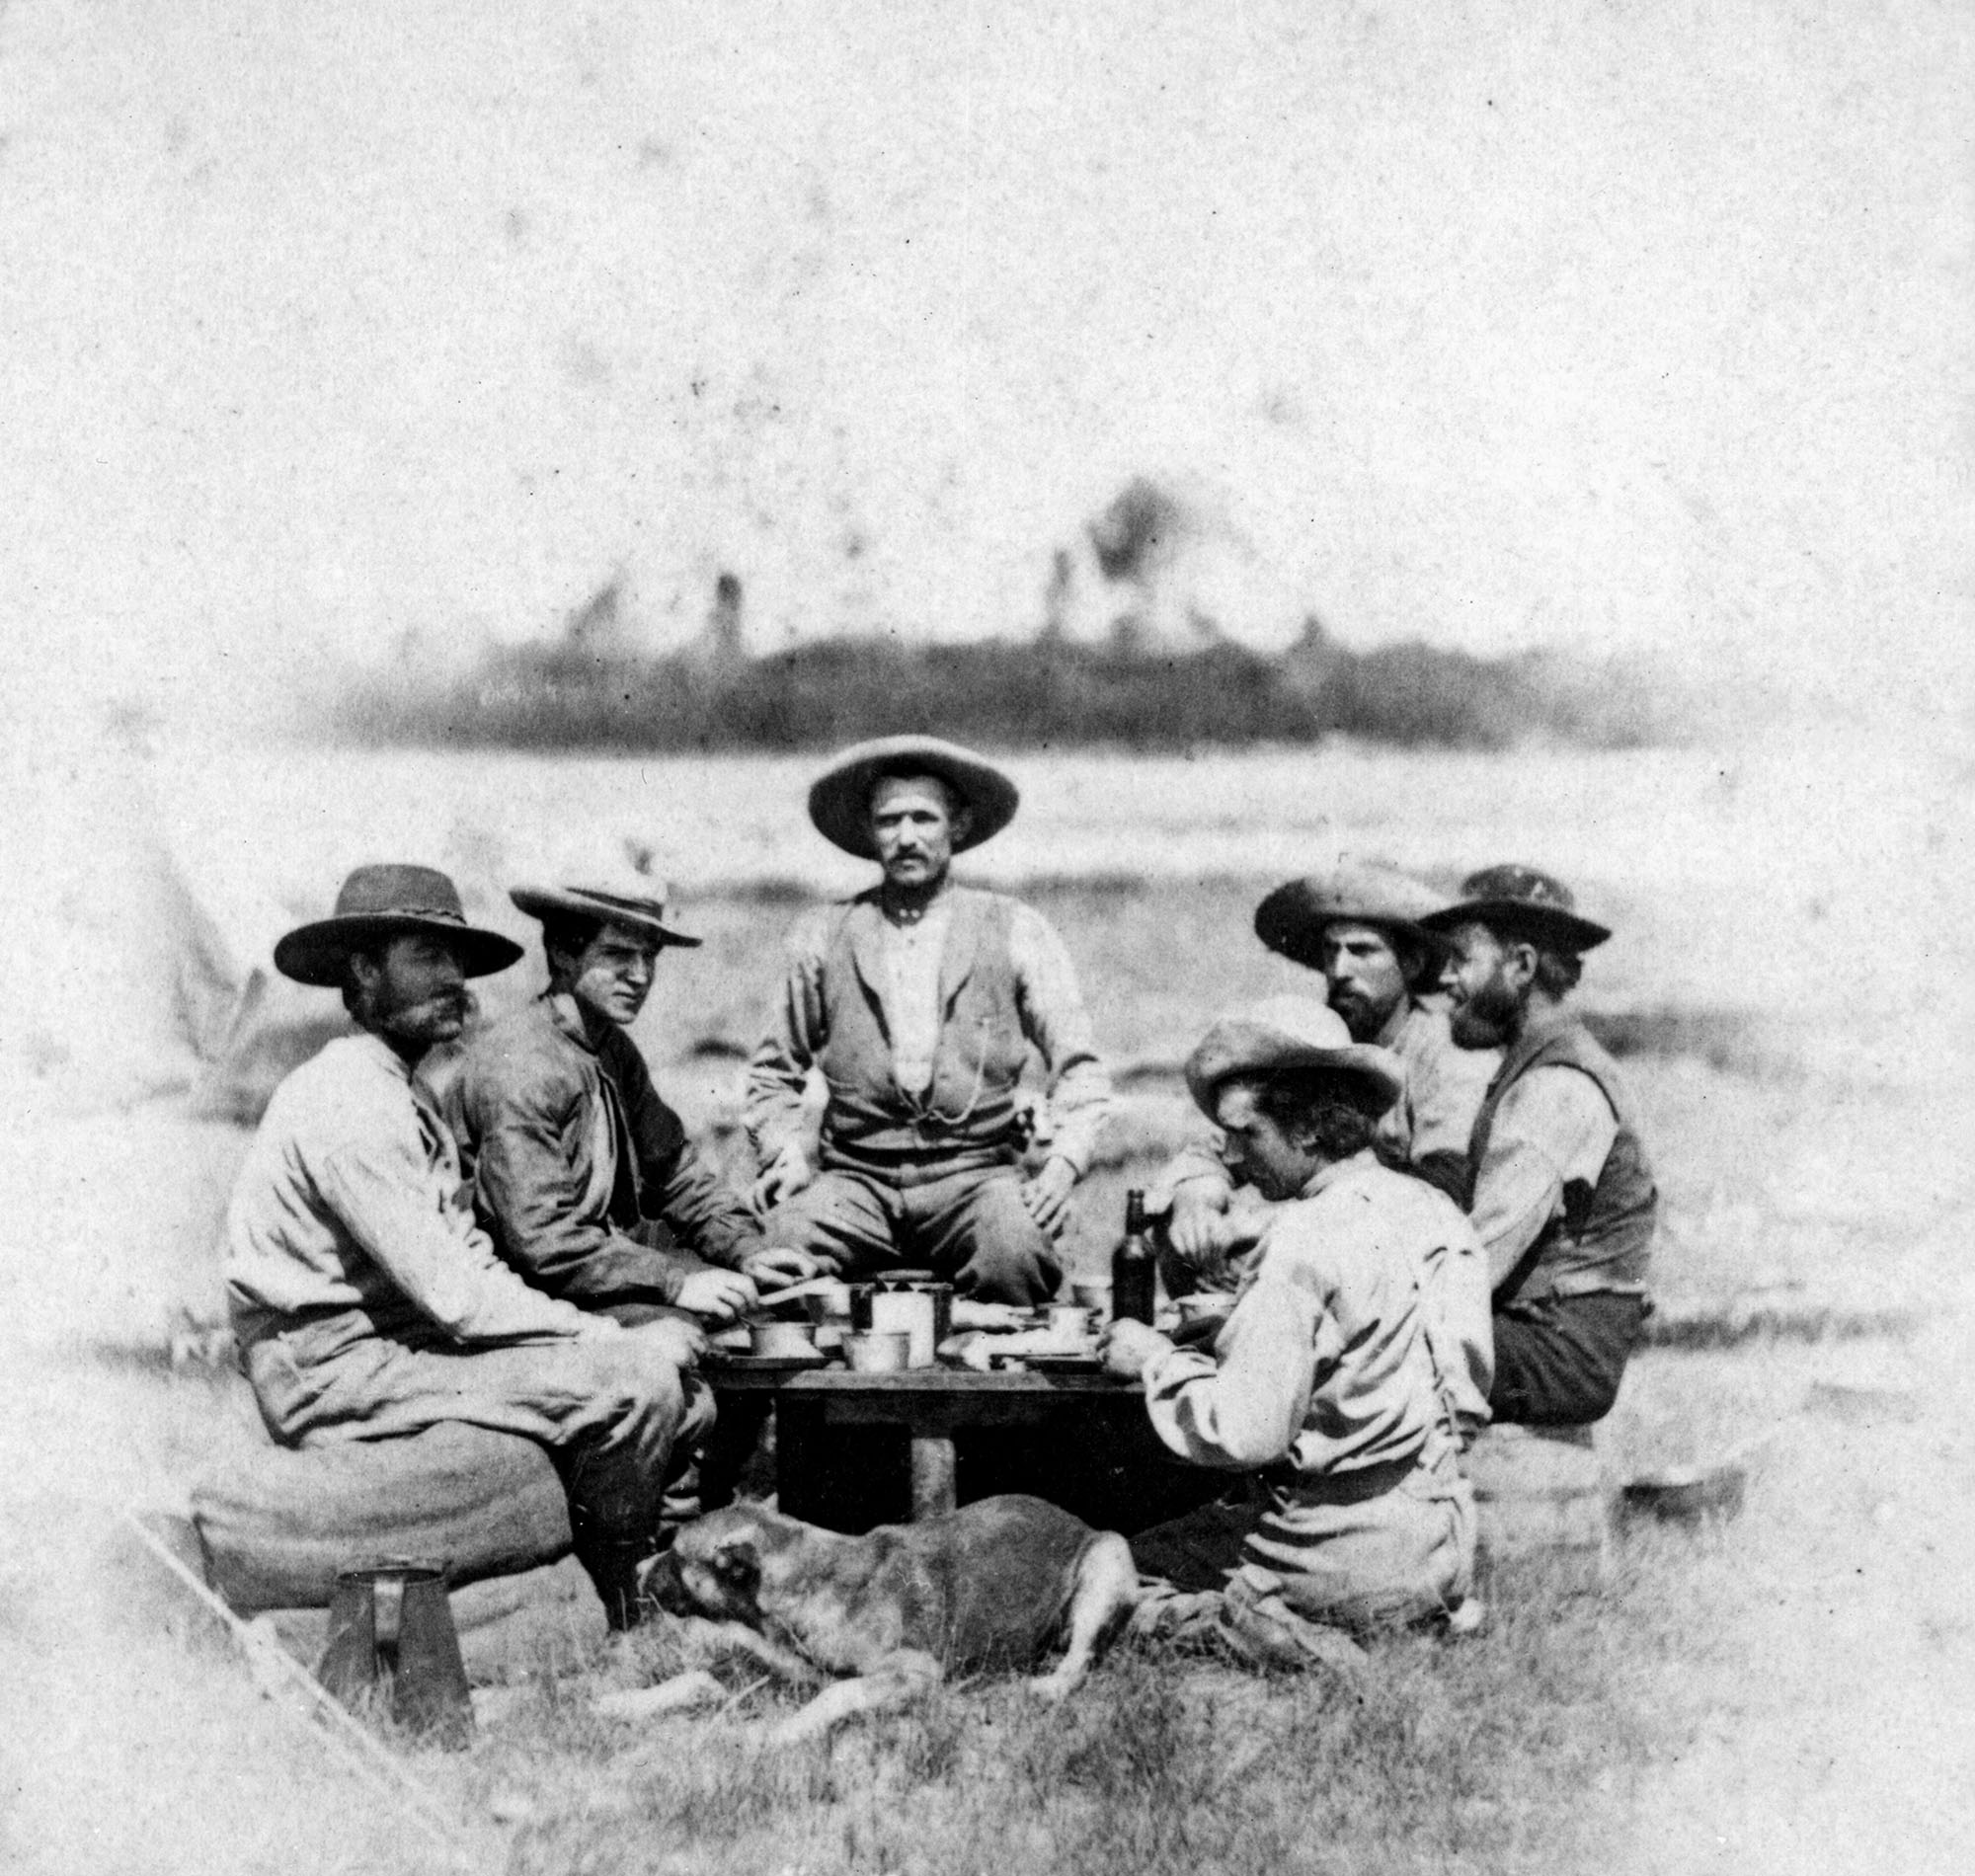 Men sit around a campfire